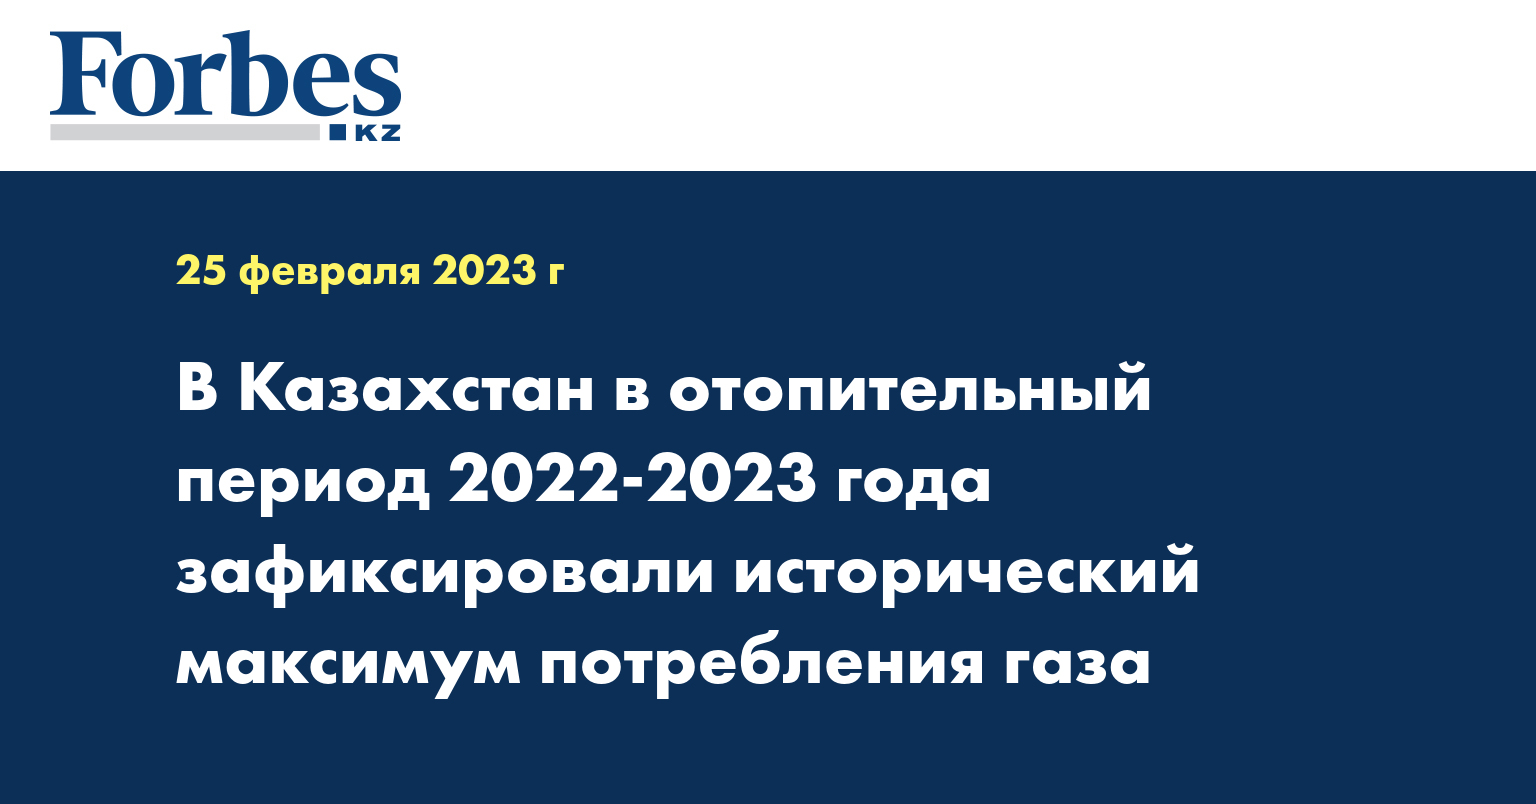 В Казахстан в отопительный период 2022-2023 года зафиксировали исторический максимум потребления газа